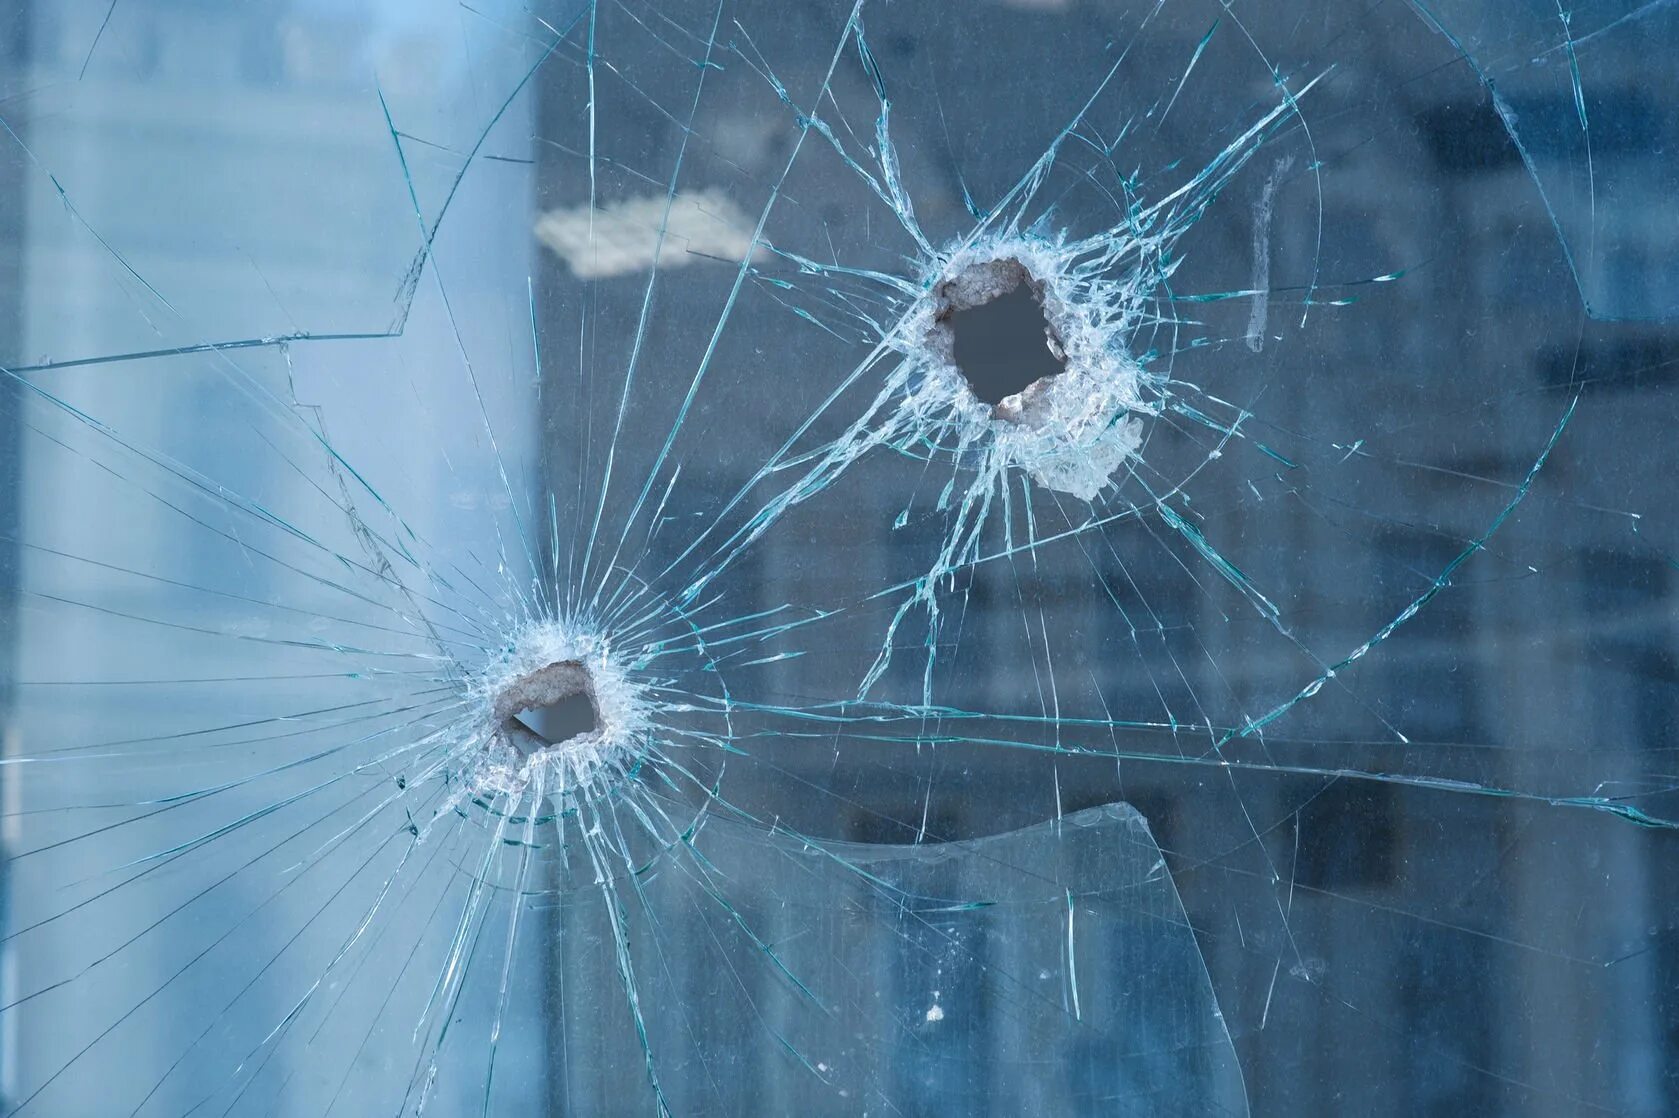 След стекло. Выстрел в стекло. Пуля разбивает стекло. След от пули на стекле. Следы выстрела на стекле.